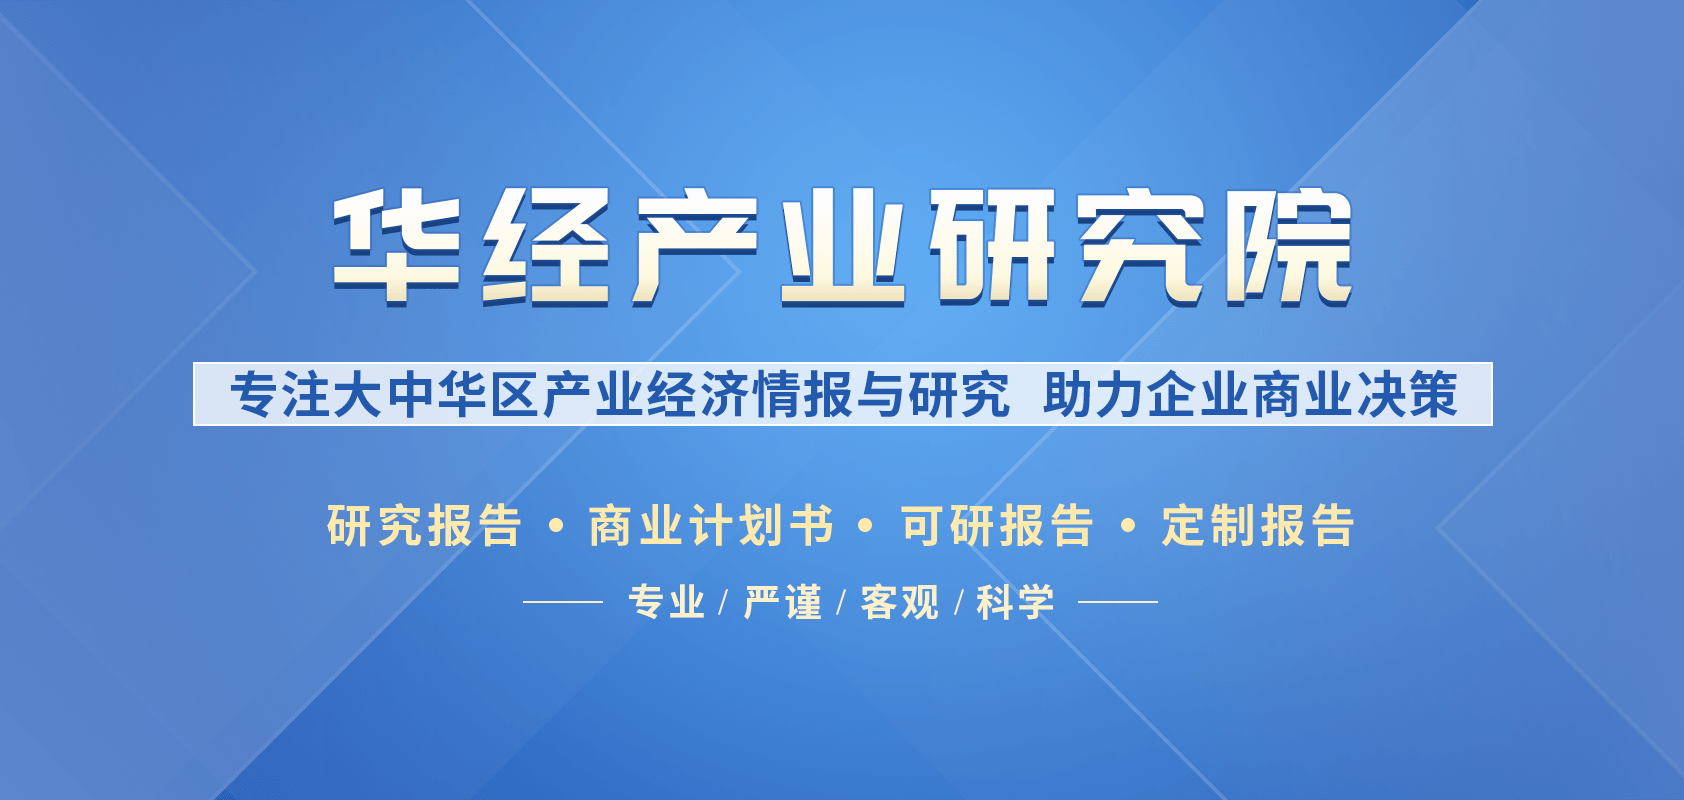 仿苹果相册中国版:中国仿丝大方巾行业市场发展现状及投资方向研究报告